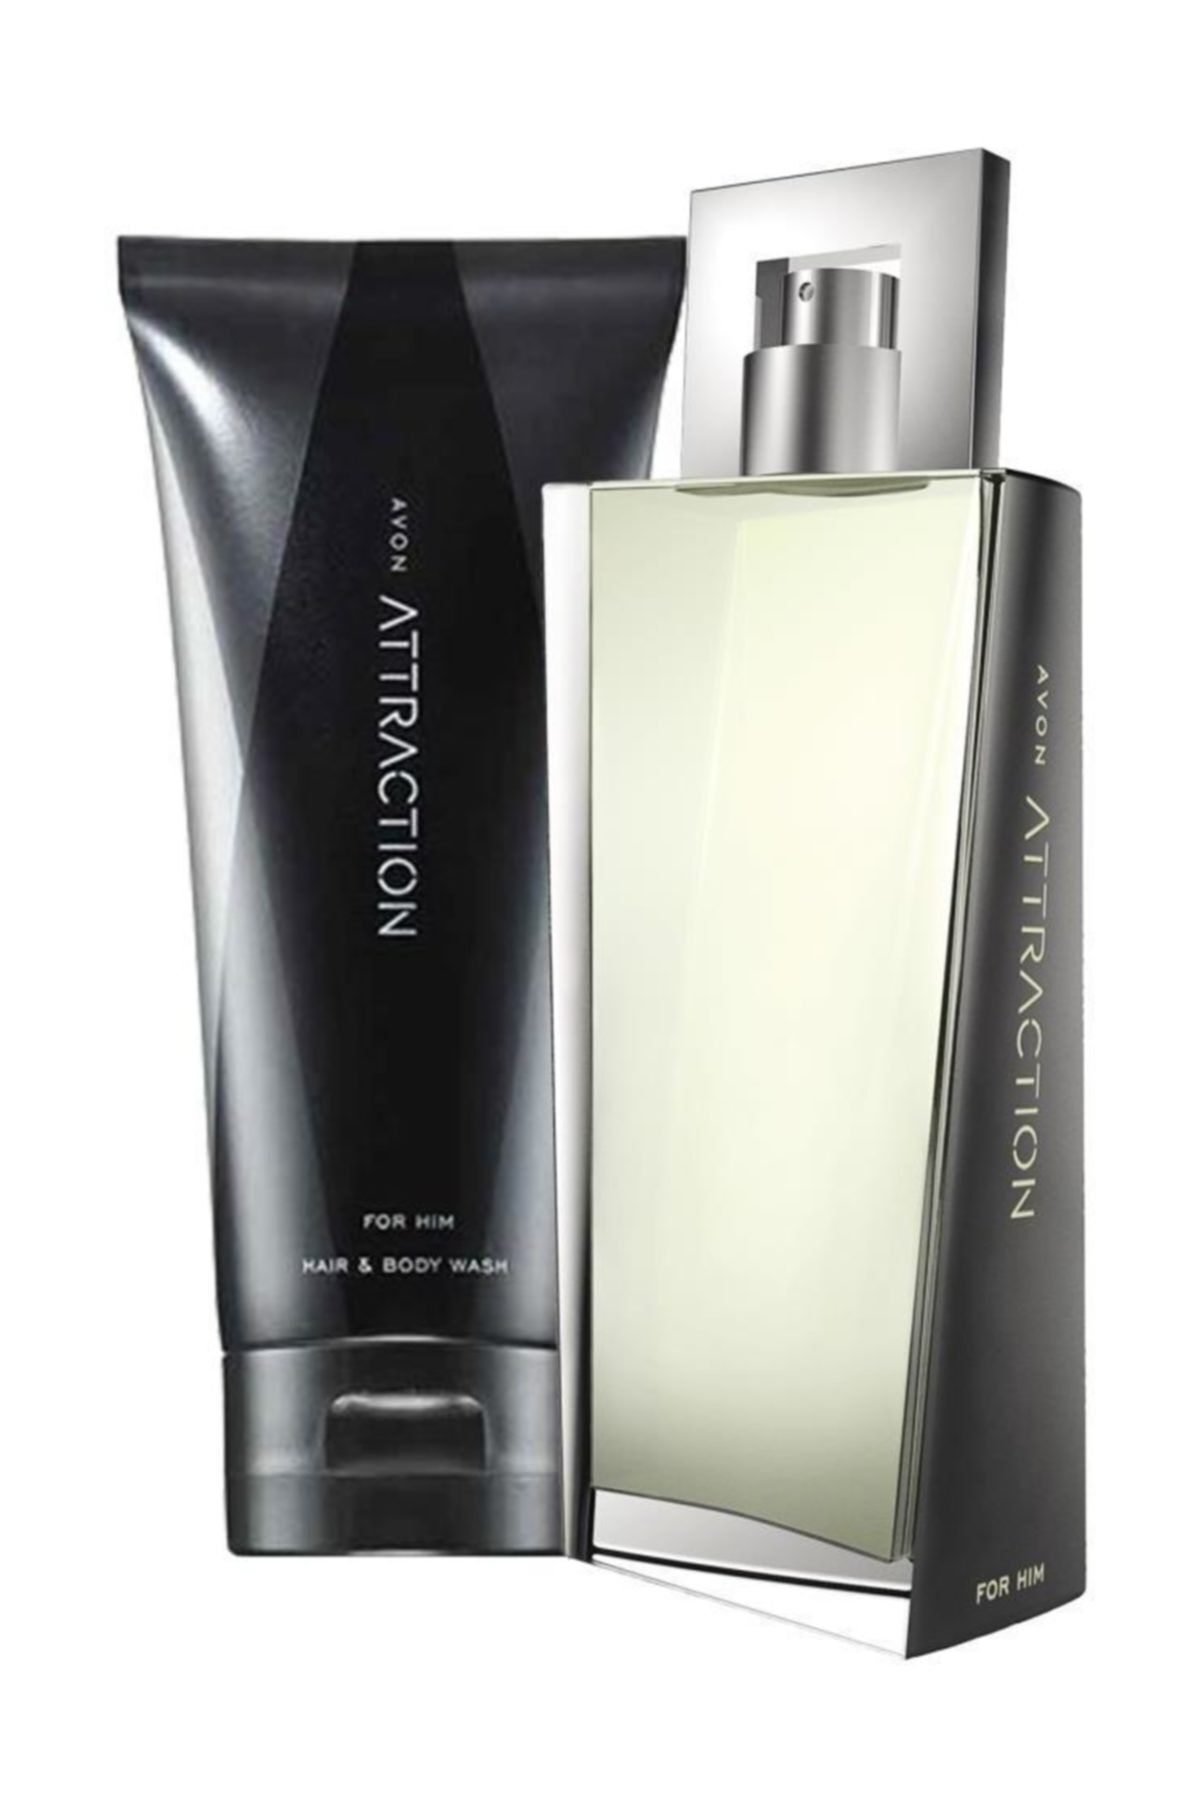 Avon Attraction Erkek Parfüm Ve Saç Vücut Şampuanı Hediye Paketi